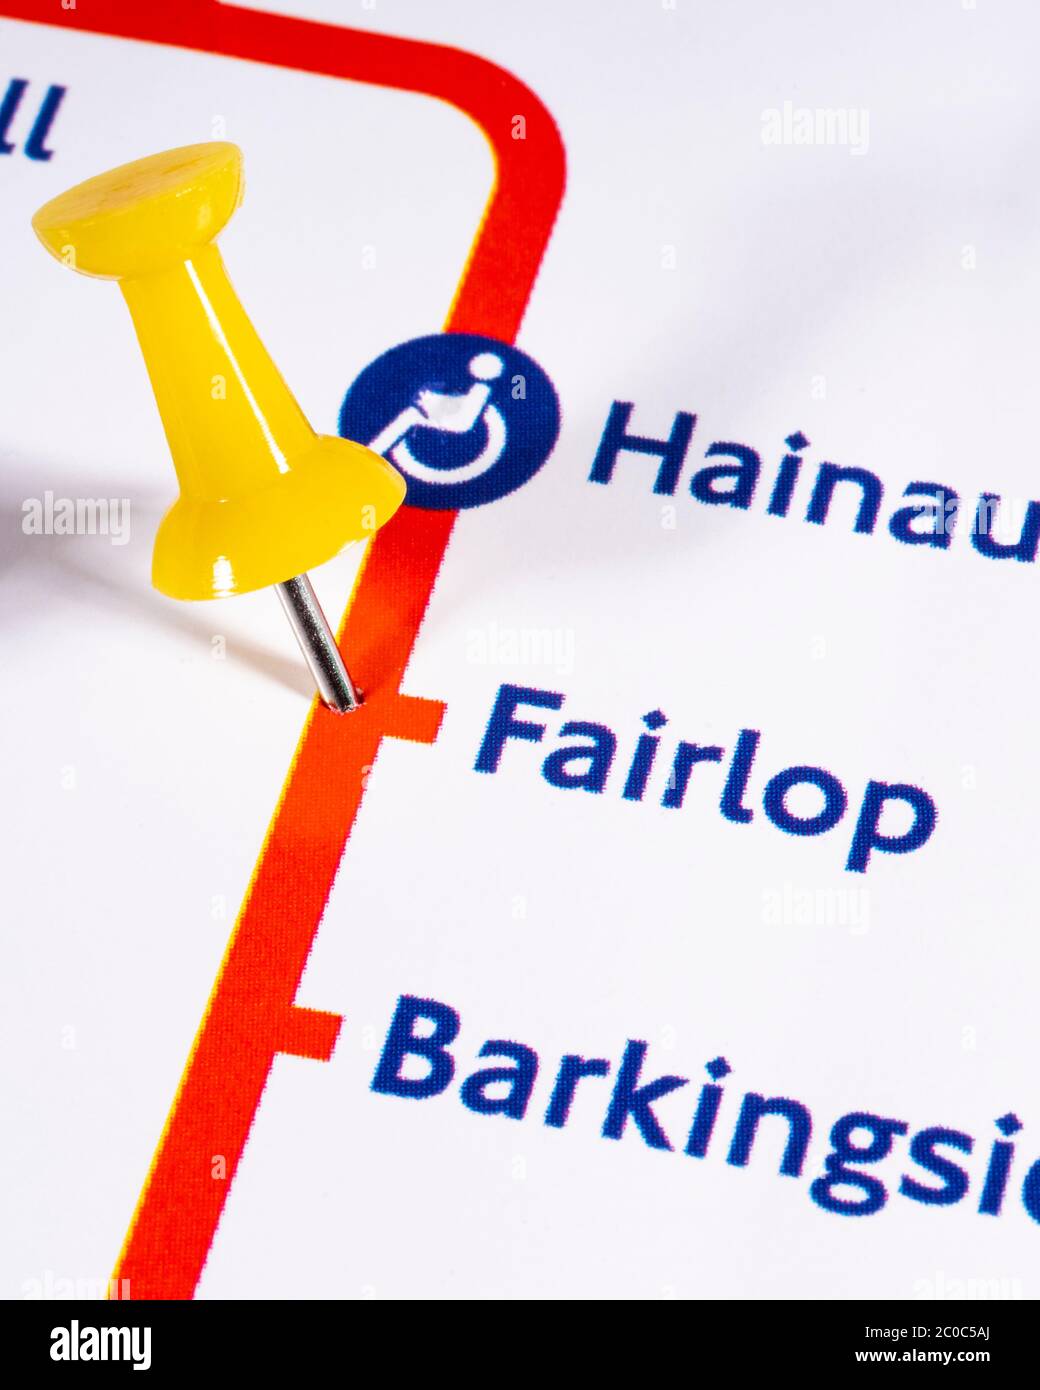 Londres, Royaume-Uni - 10 juin 2020: Une carte PIN marquant l'emplacement de la station Fairlop sur un métro de Londres carte Banque D'Images